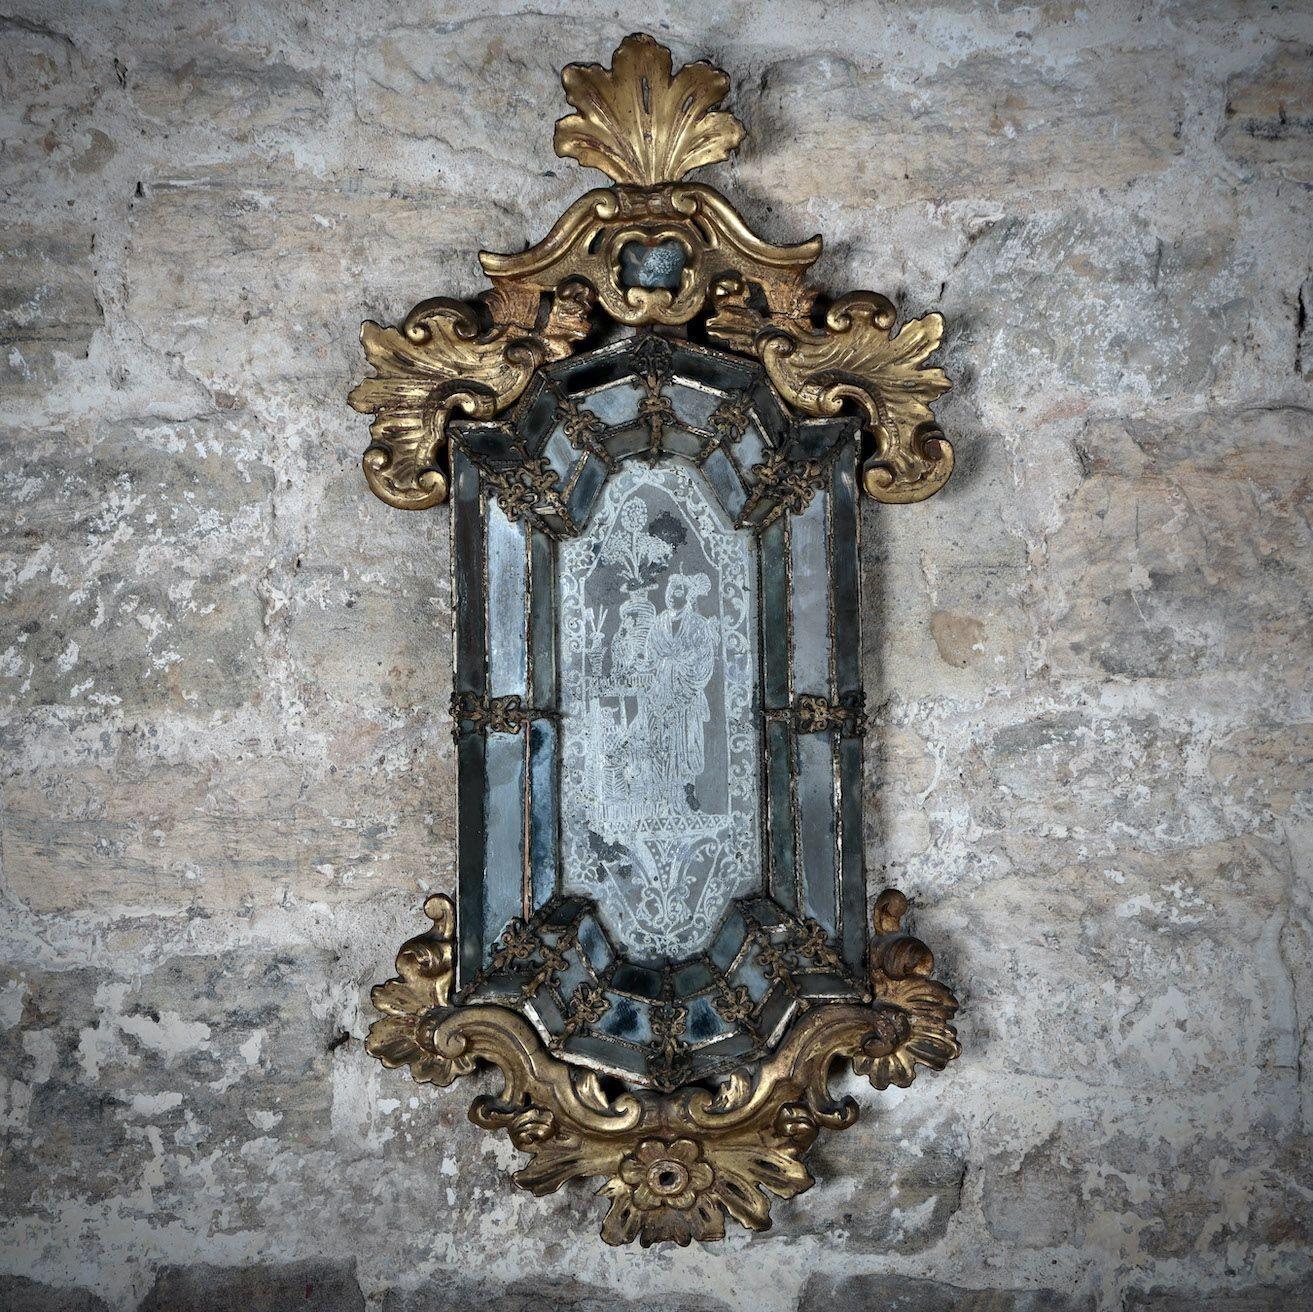 Ein schöner, originaler venezianischer Spiegel mit aufwändiger Vergoldung, einzelnen geschliffenen Spiegelplatten und einer zentralen, in das Glas geätzten Chinoiserie-Figur. Circa 1740.